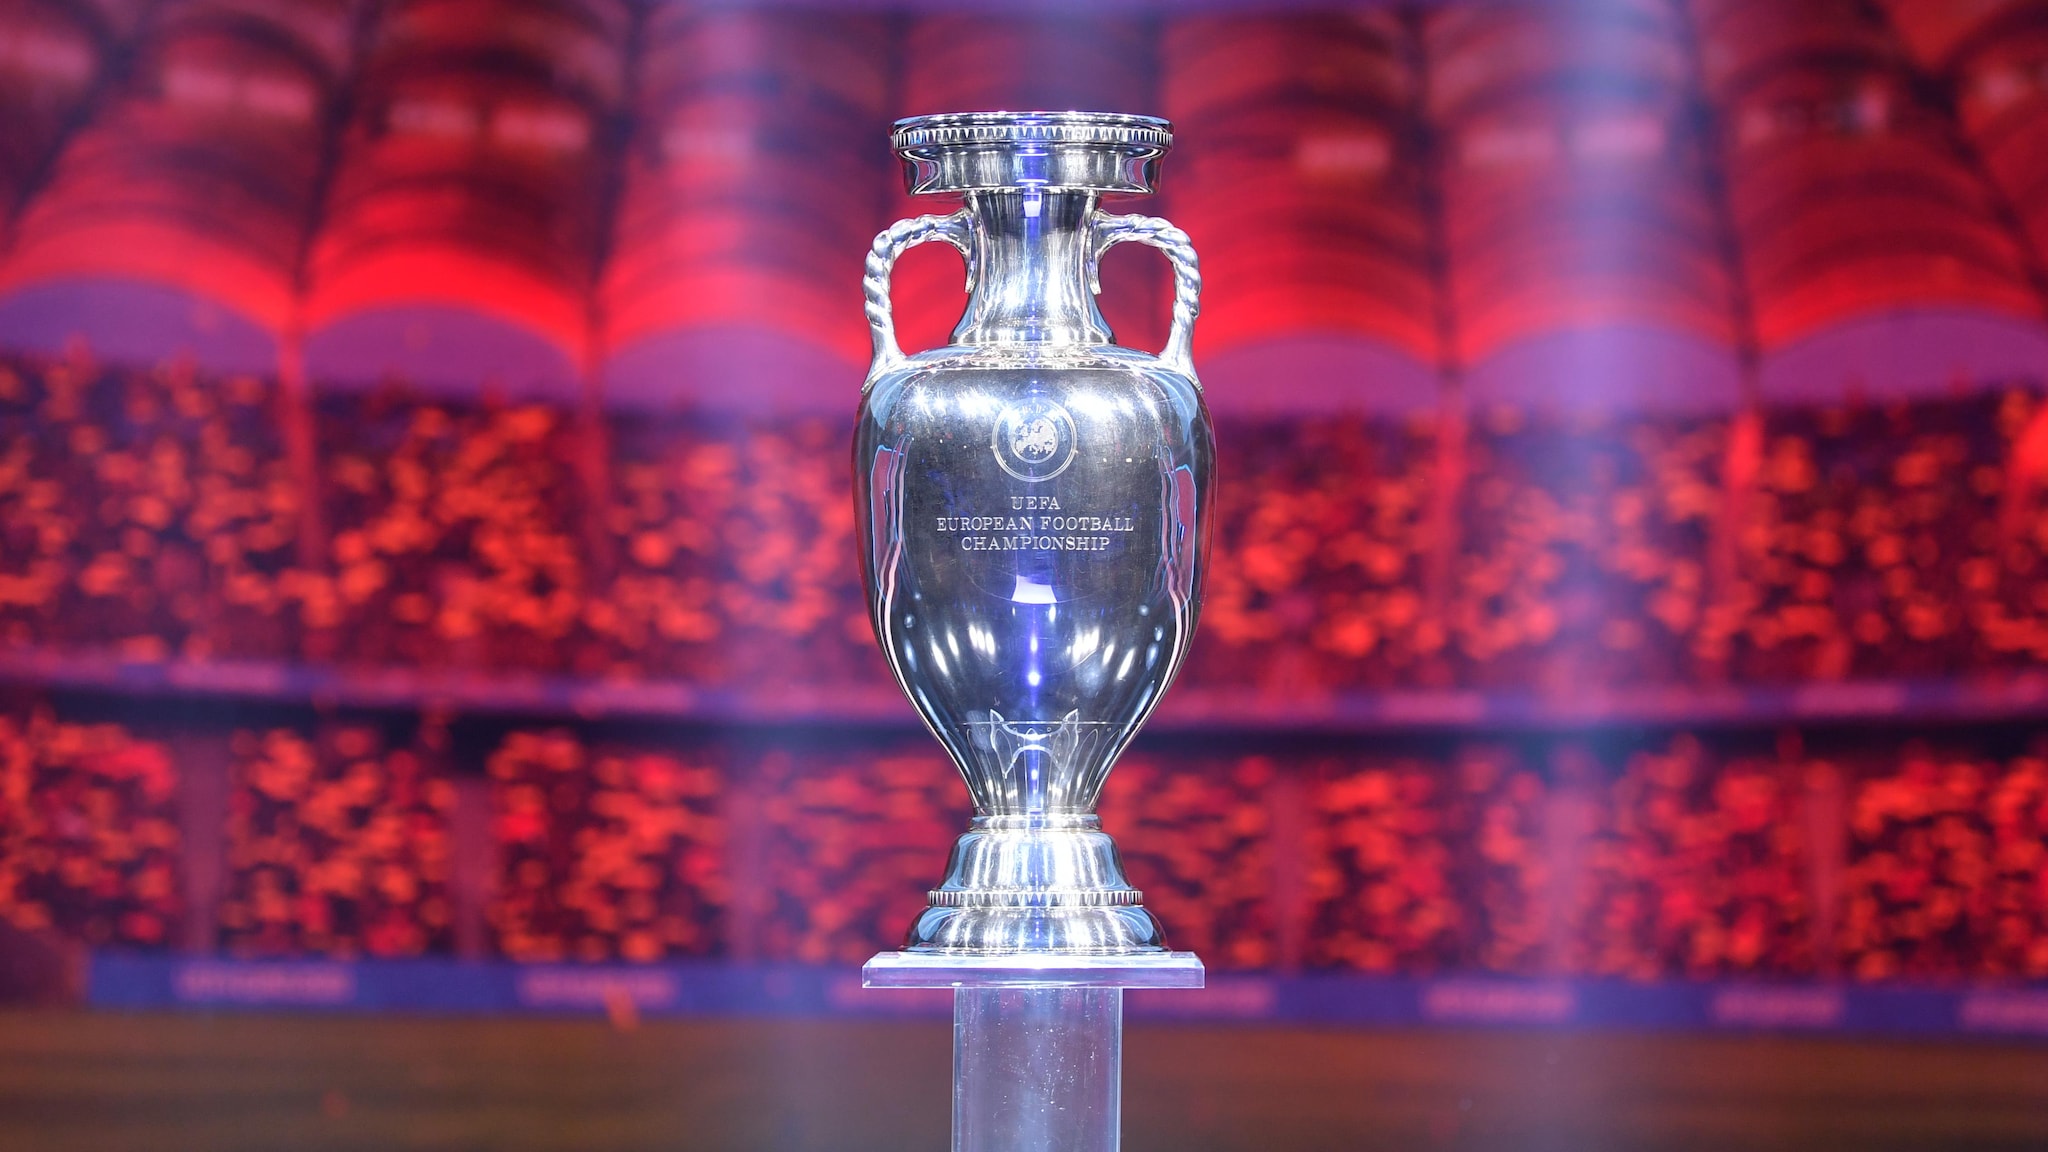 Le trophée de l'UEFA EURO 2020 UEFA EURO 2020 ThePressFree